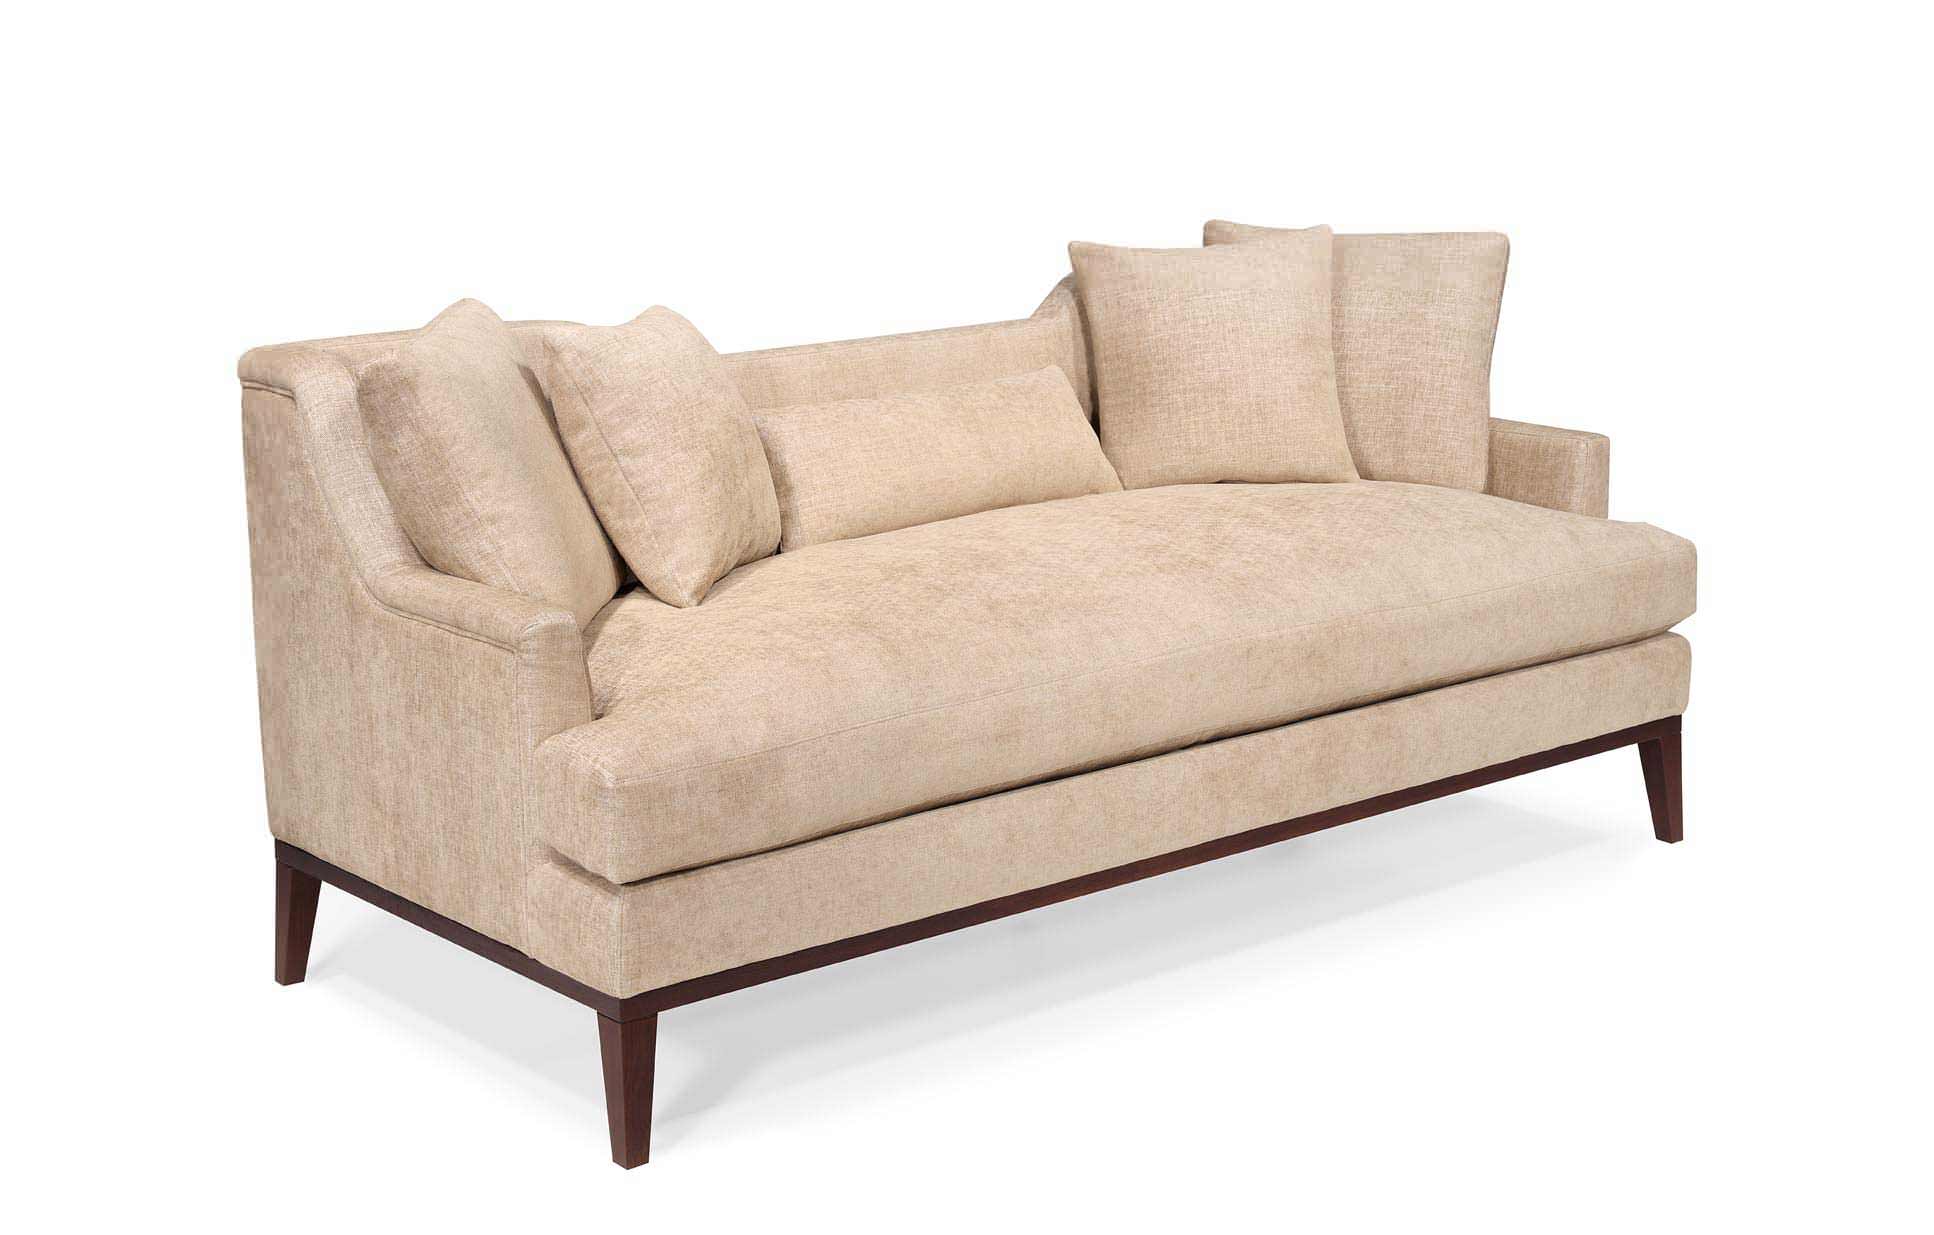 Classically elegant sofa